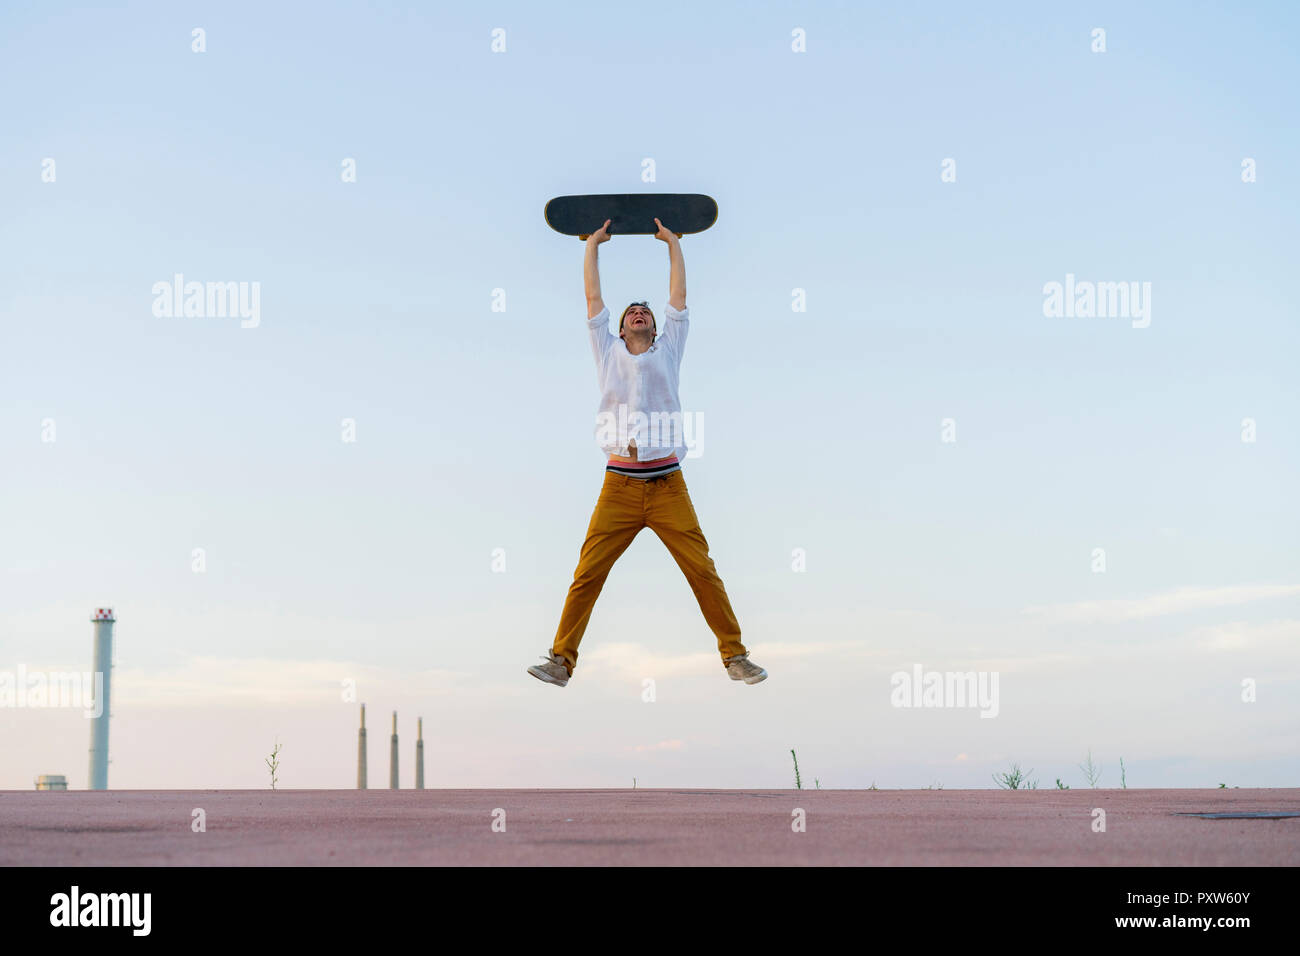 Junge Mann in der Luft mit einem Skateboard springen Stockfoto